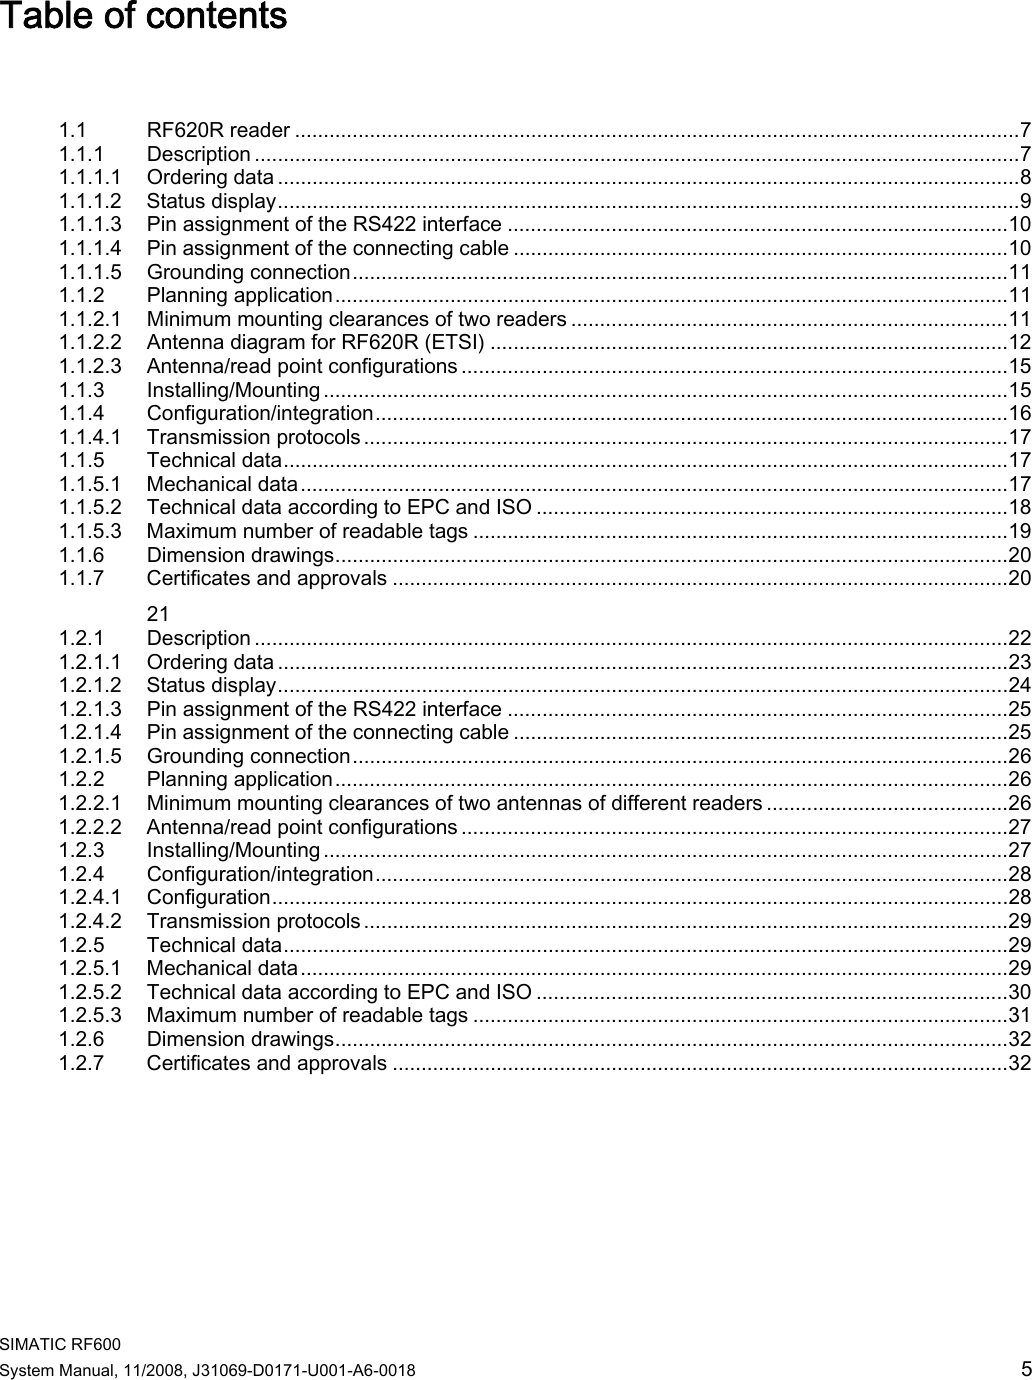 Page 1 of Siemens RF620R UHF RFID READER User Manual System Manual RF600 en